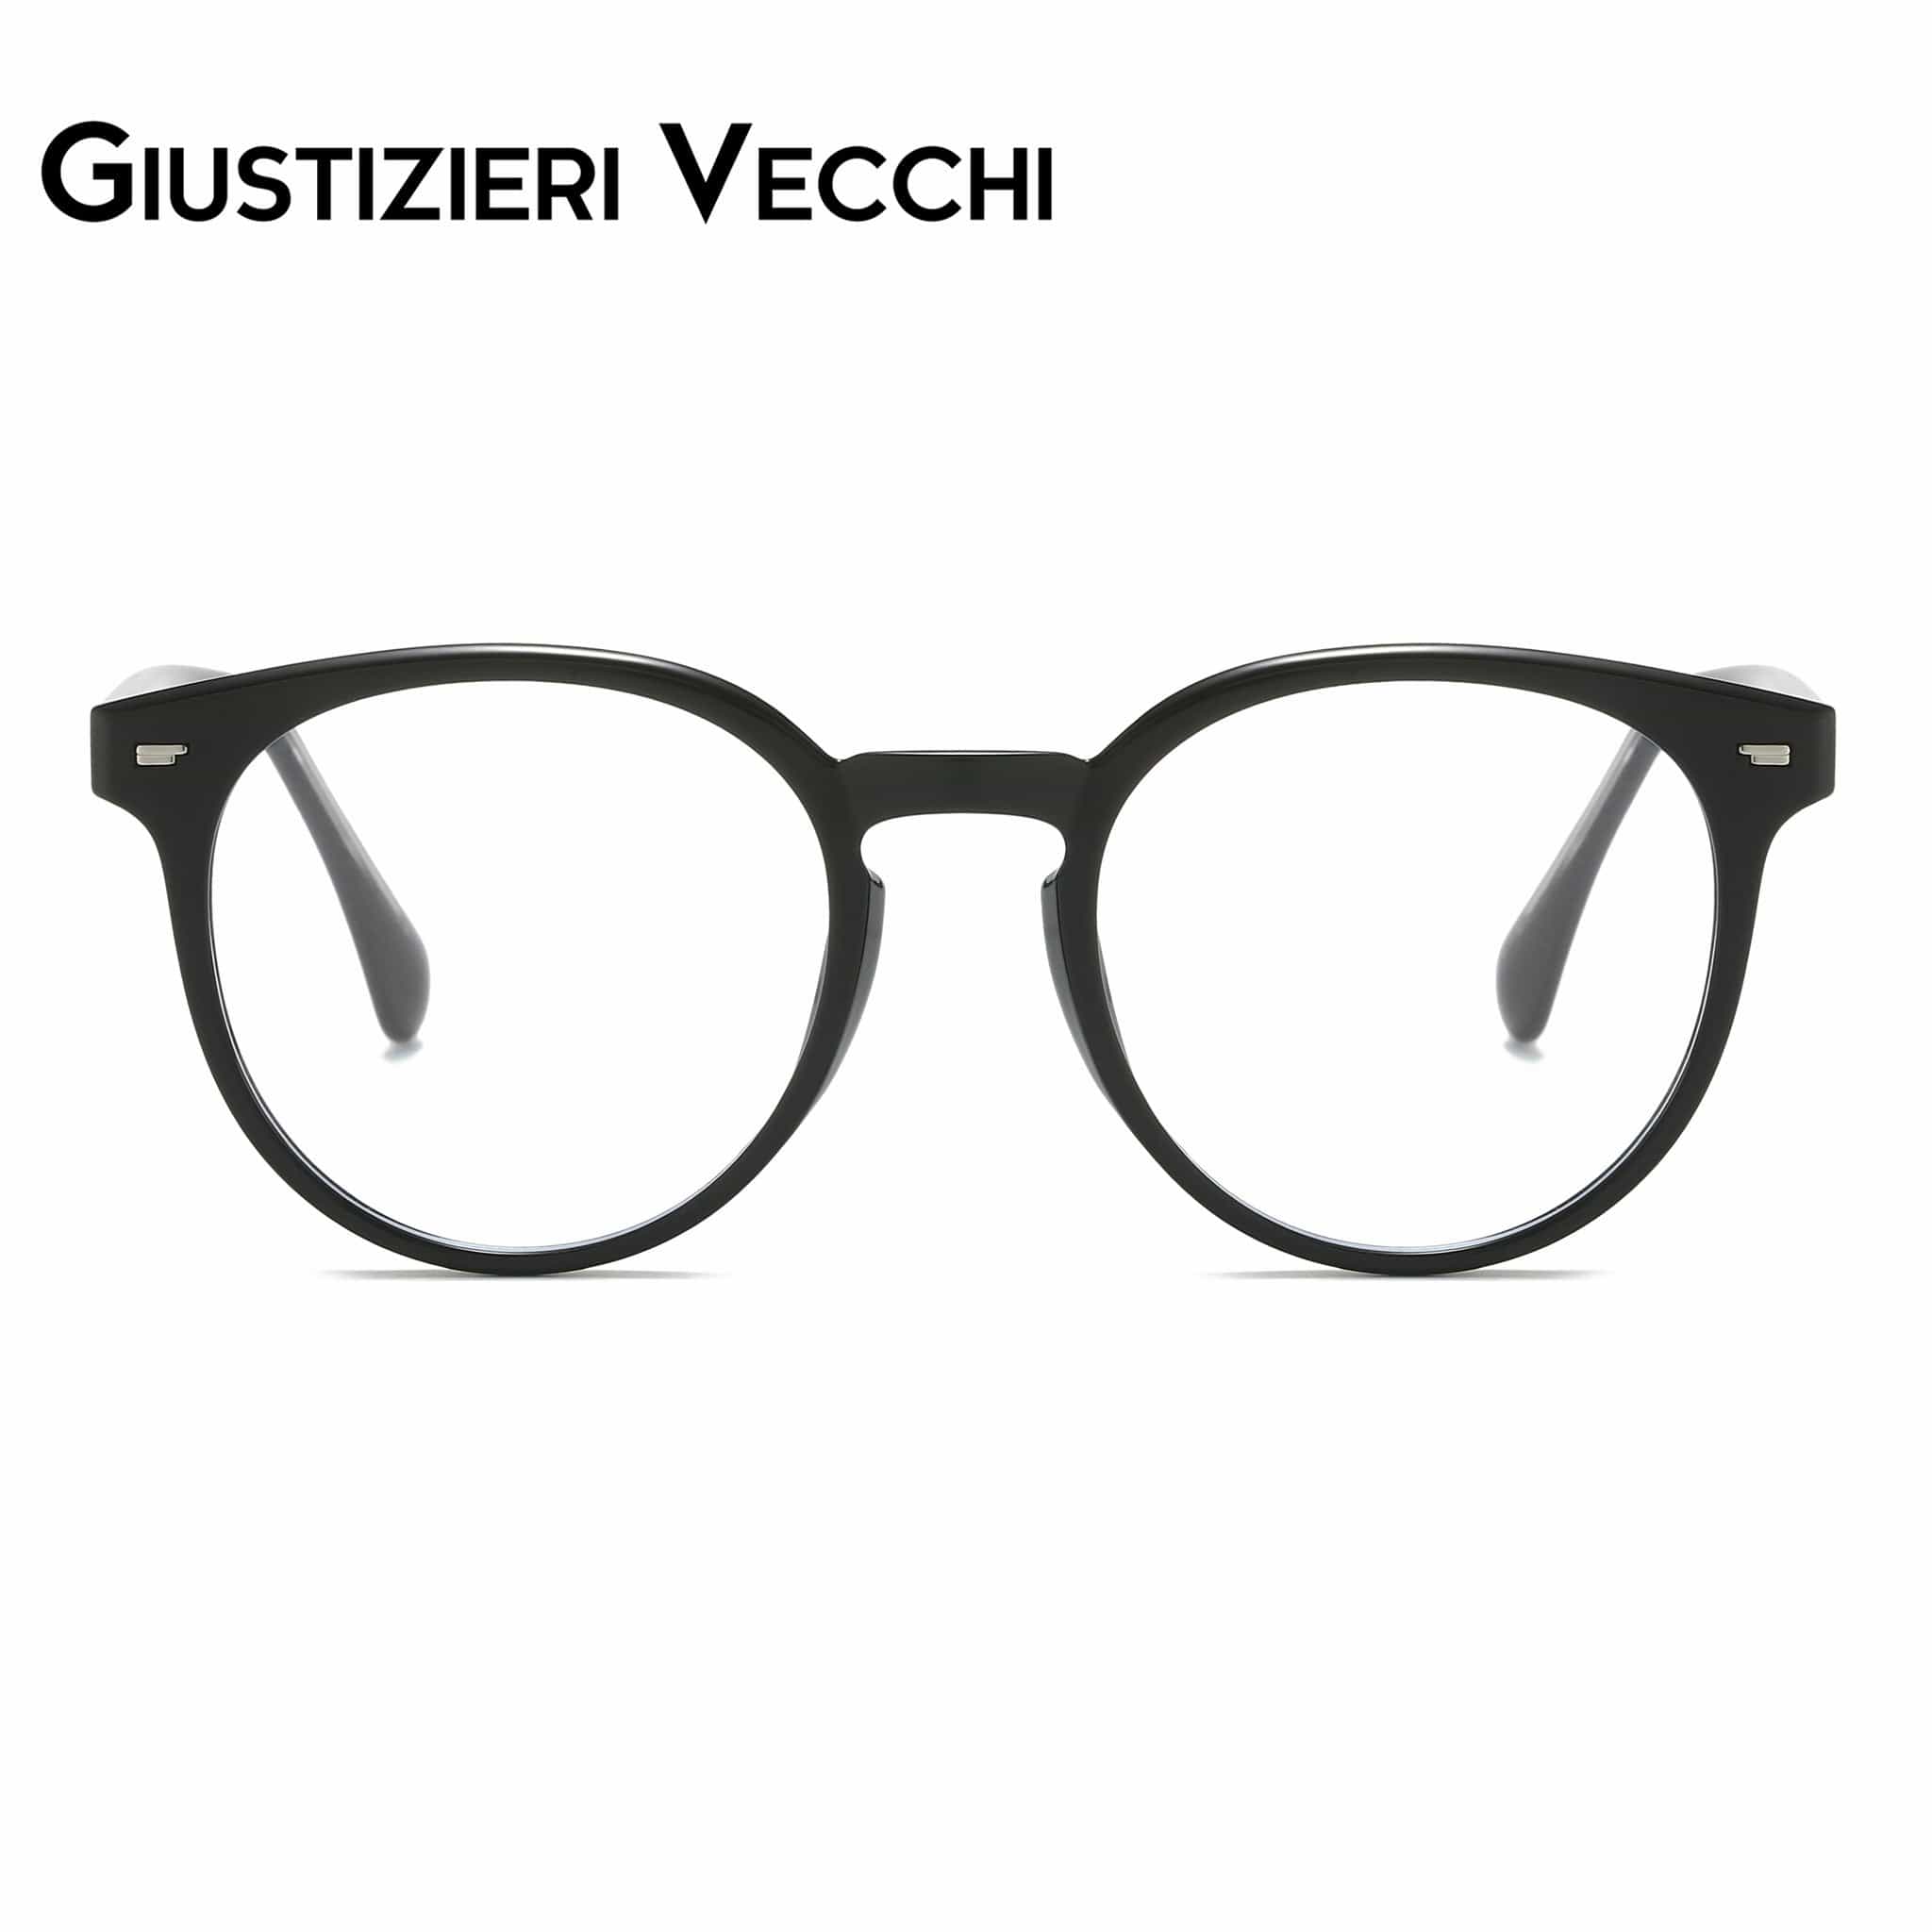 GIUSTIZIERI VECCHI Eyeglasses Small / Black NeonBloom Uno